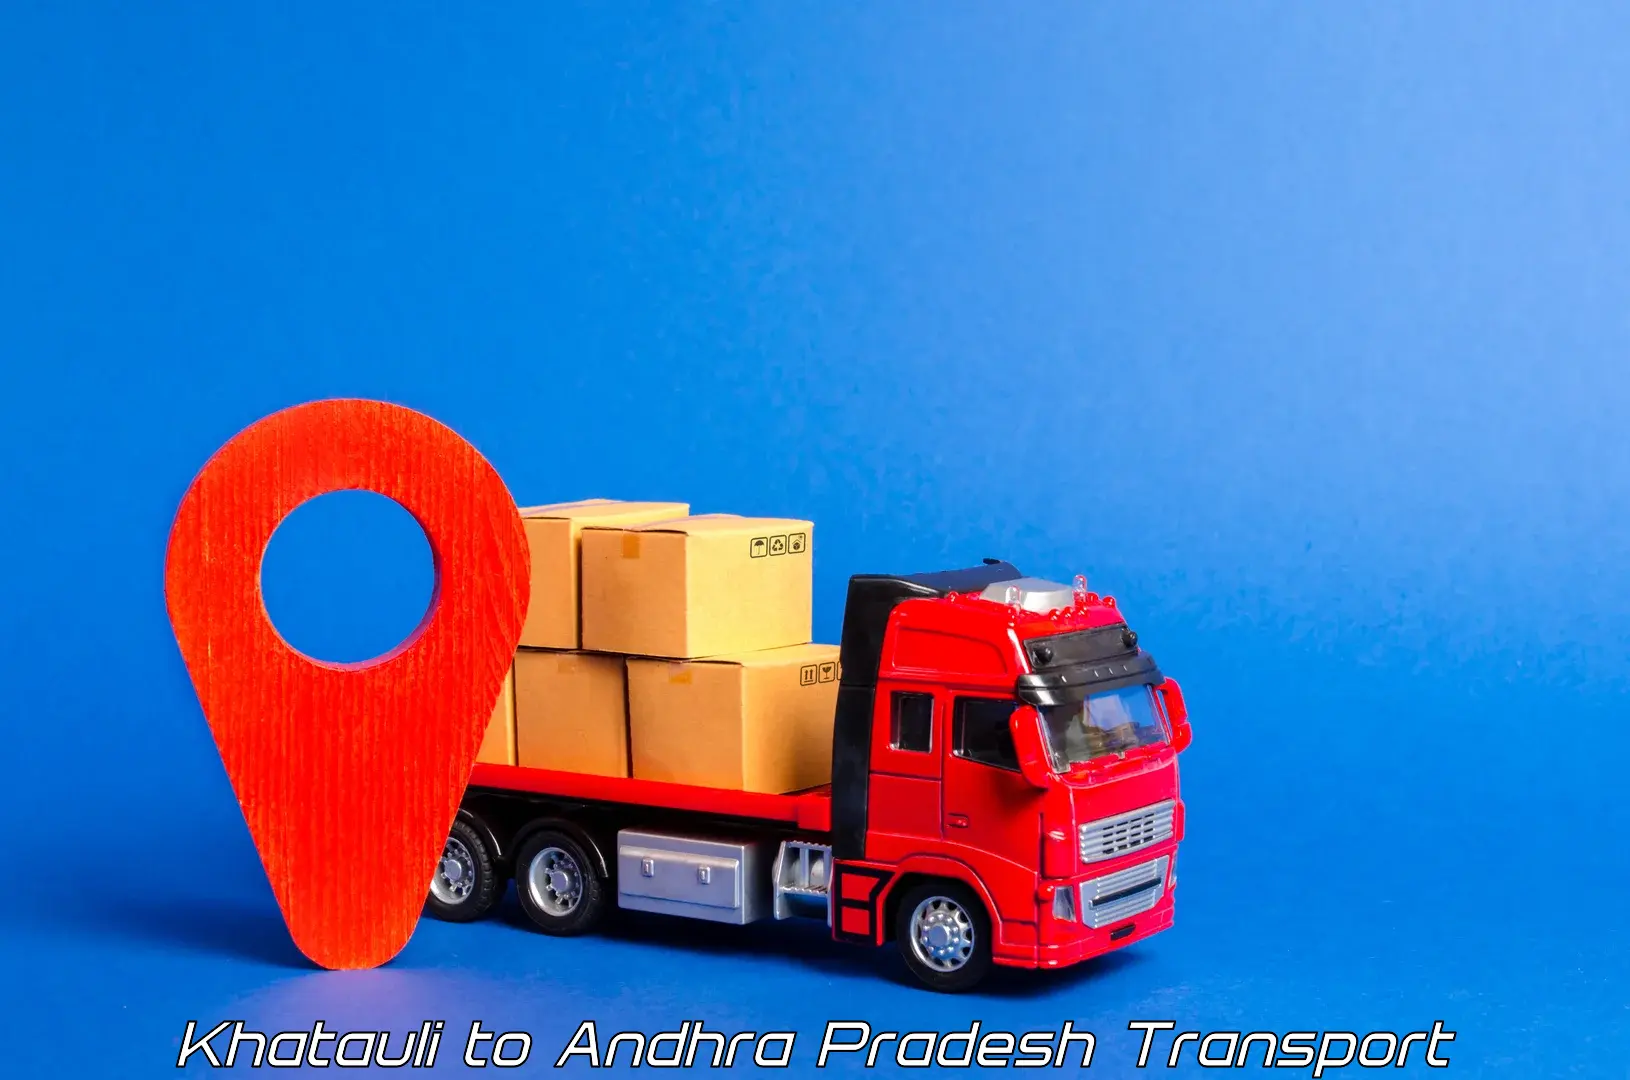 Truck transport companies in India Khatauli to Eluru